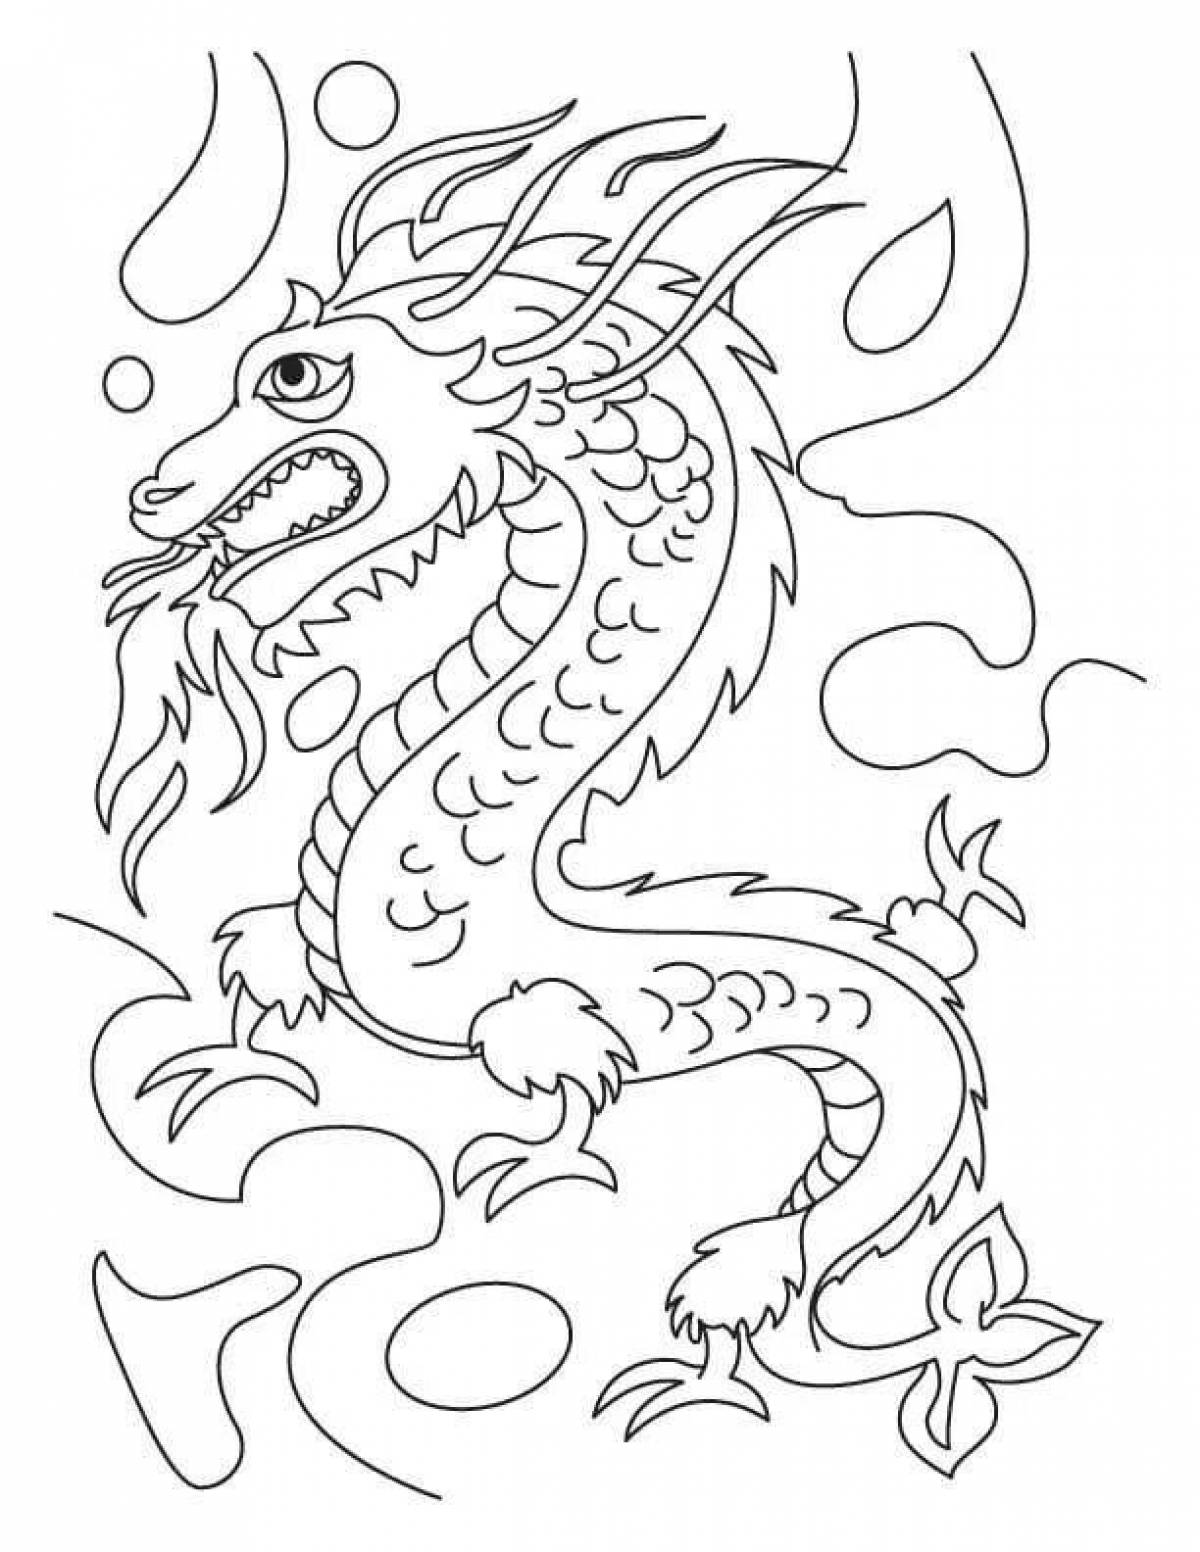 Цветная раскраска китайский дракон